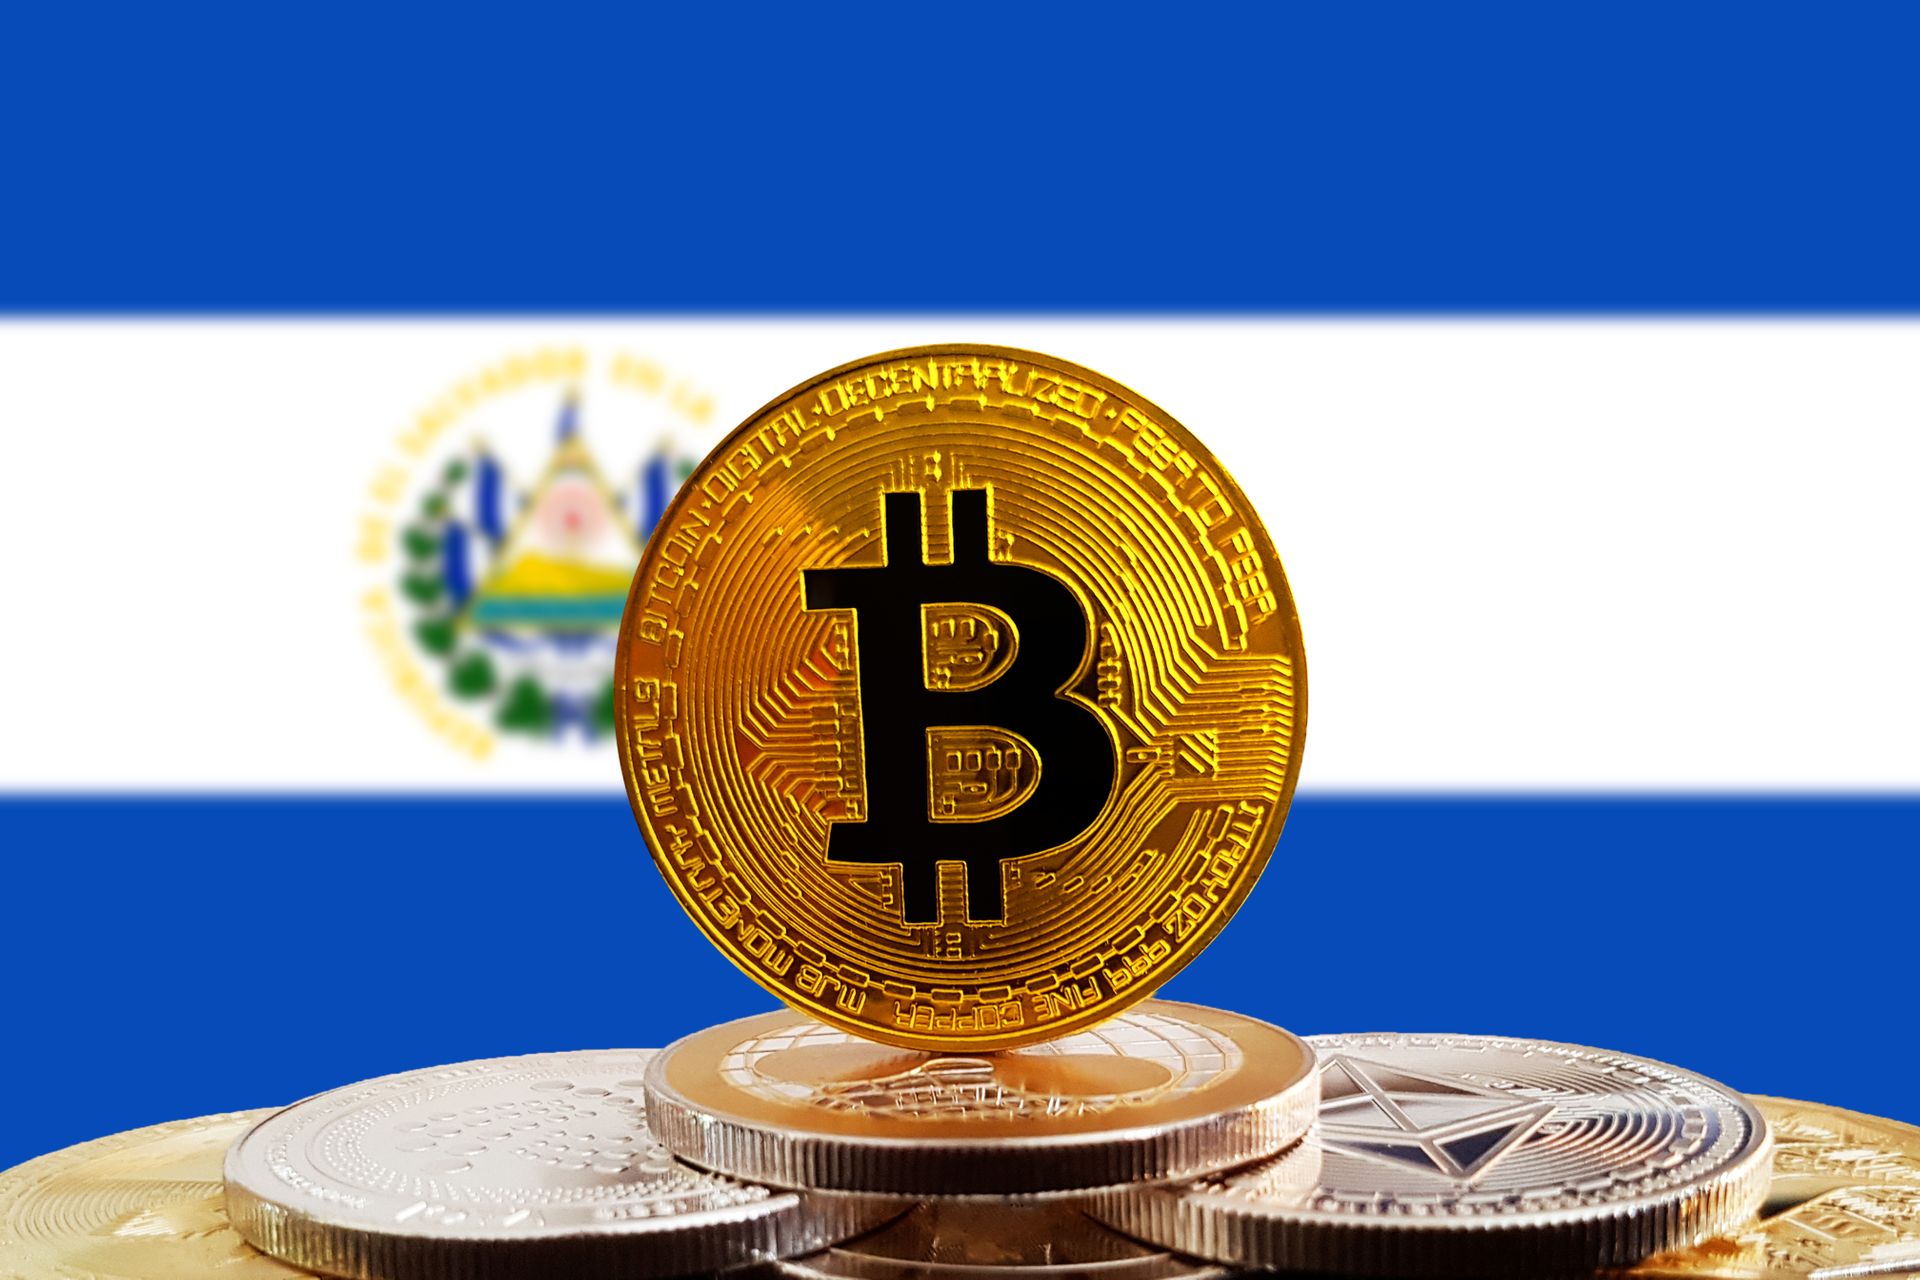 EL Salvador and Bitcoin